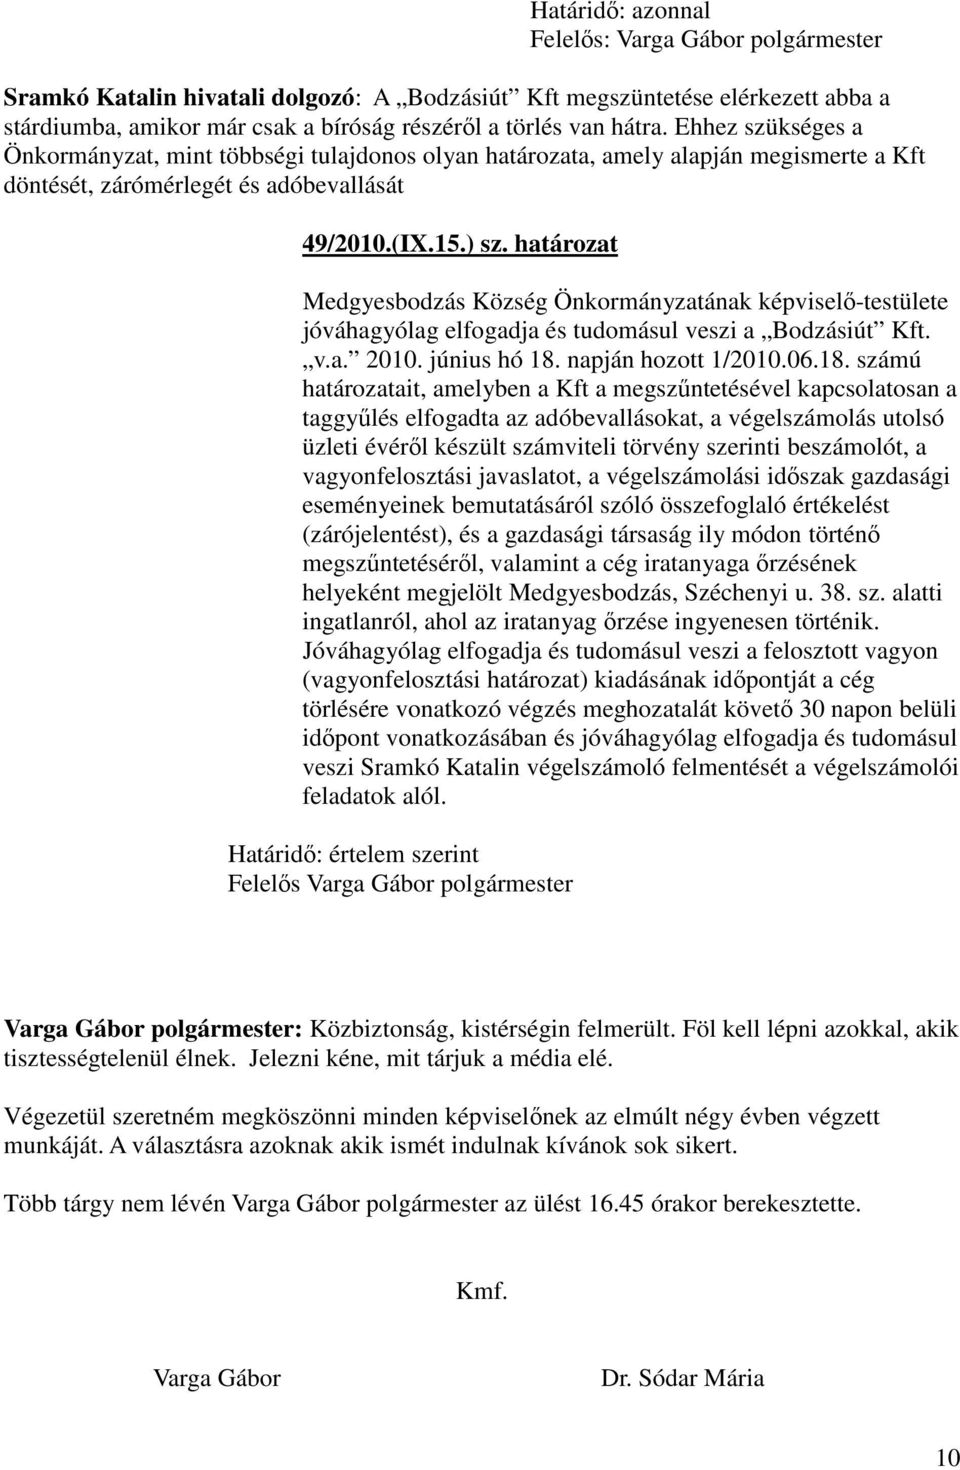 határozat Medgyesbodzás Község Önkormányzatának képviselı-testülete jóváhagyólag elfogadja és tudomásul veszi a Bodzásiút Kft. v.a. 2010. június hó 18.